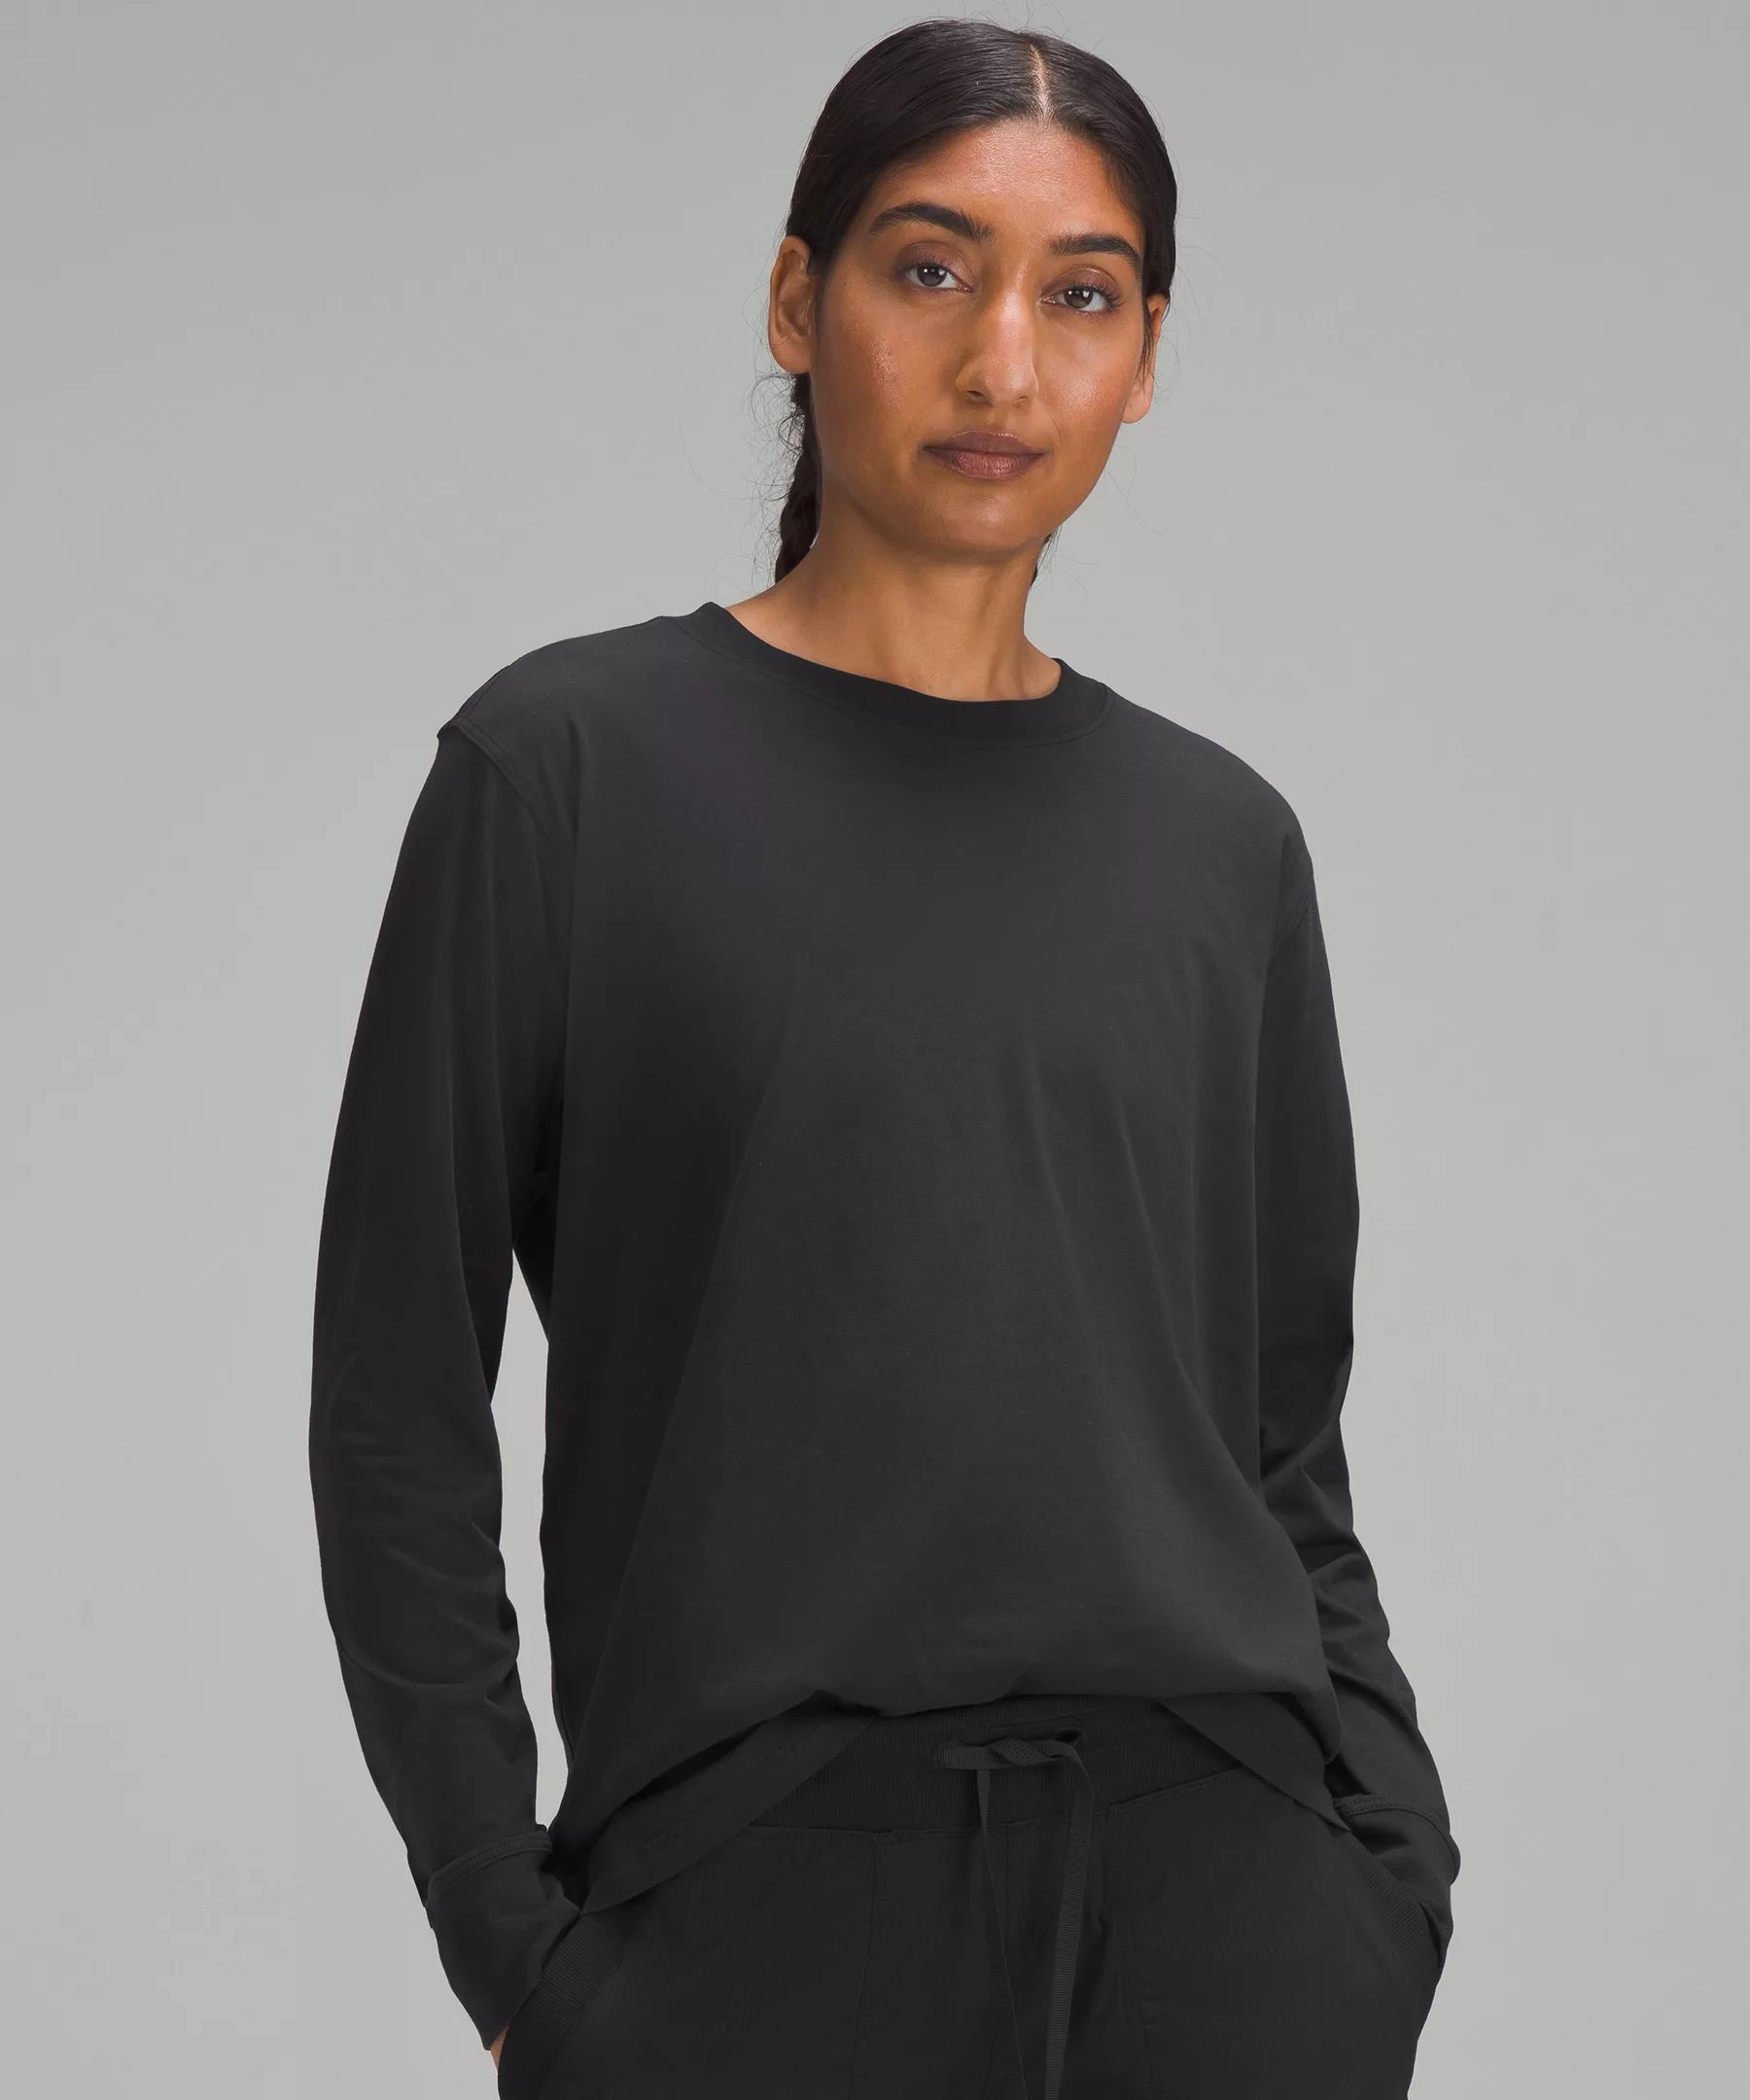 All Yours Long Sleeve | Women's Long Sleeve Shirts | lululemon | Lululemon (US)